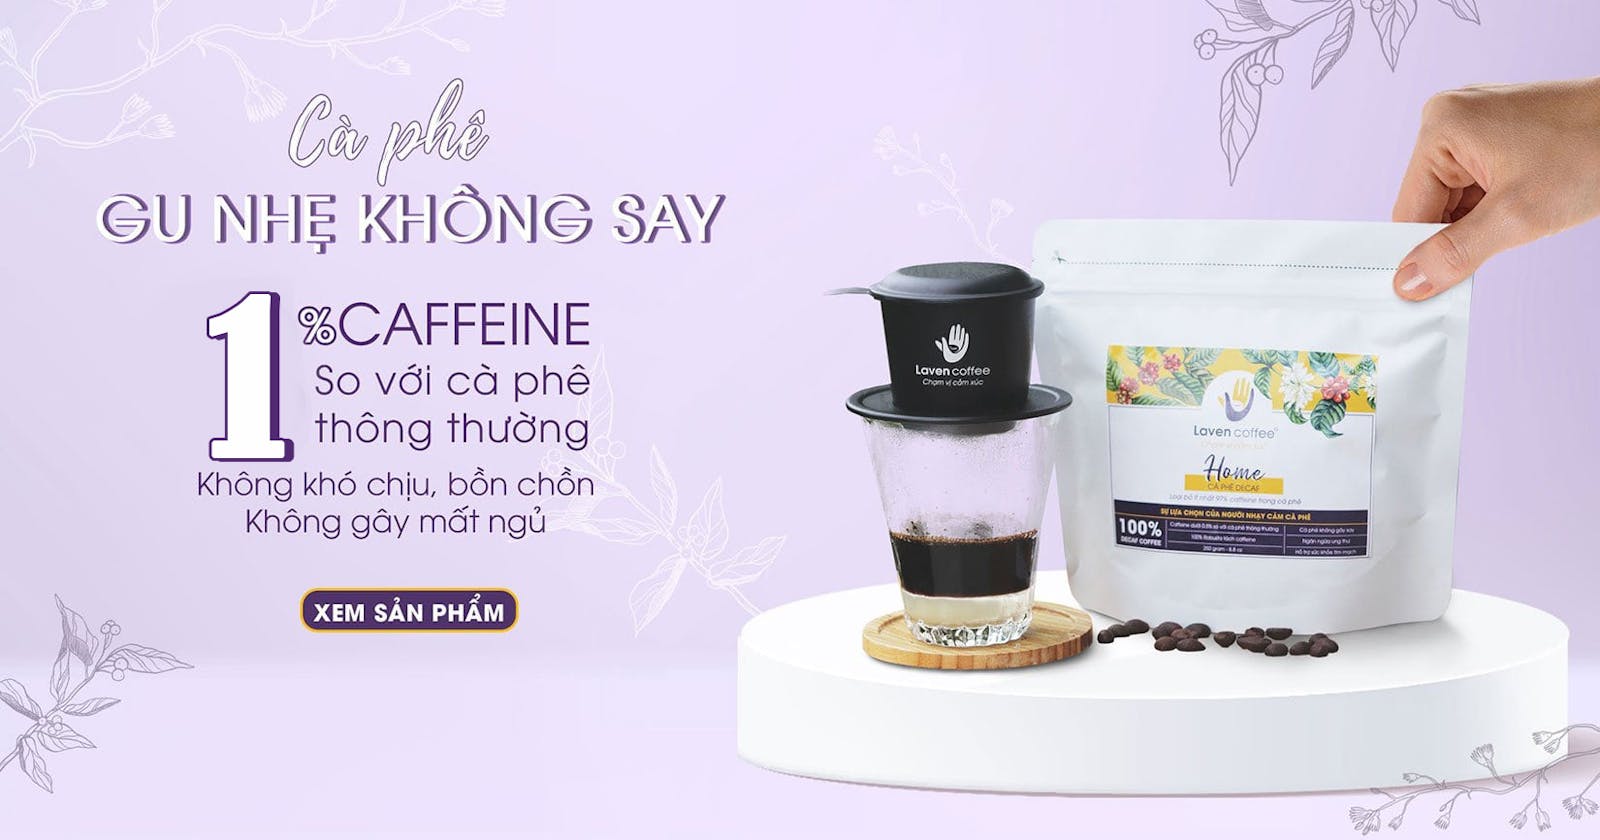 Laven Coffee là nhà máy rang cà phê nguyên chất và cung cấp máy pha cà phê tại Đồng Nai